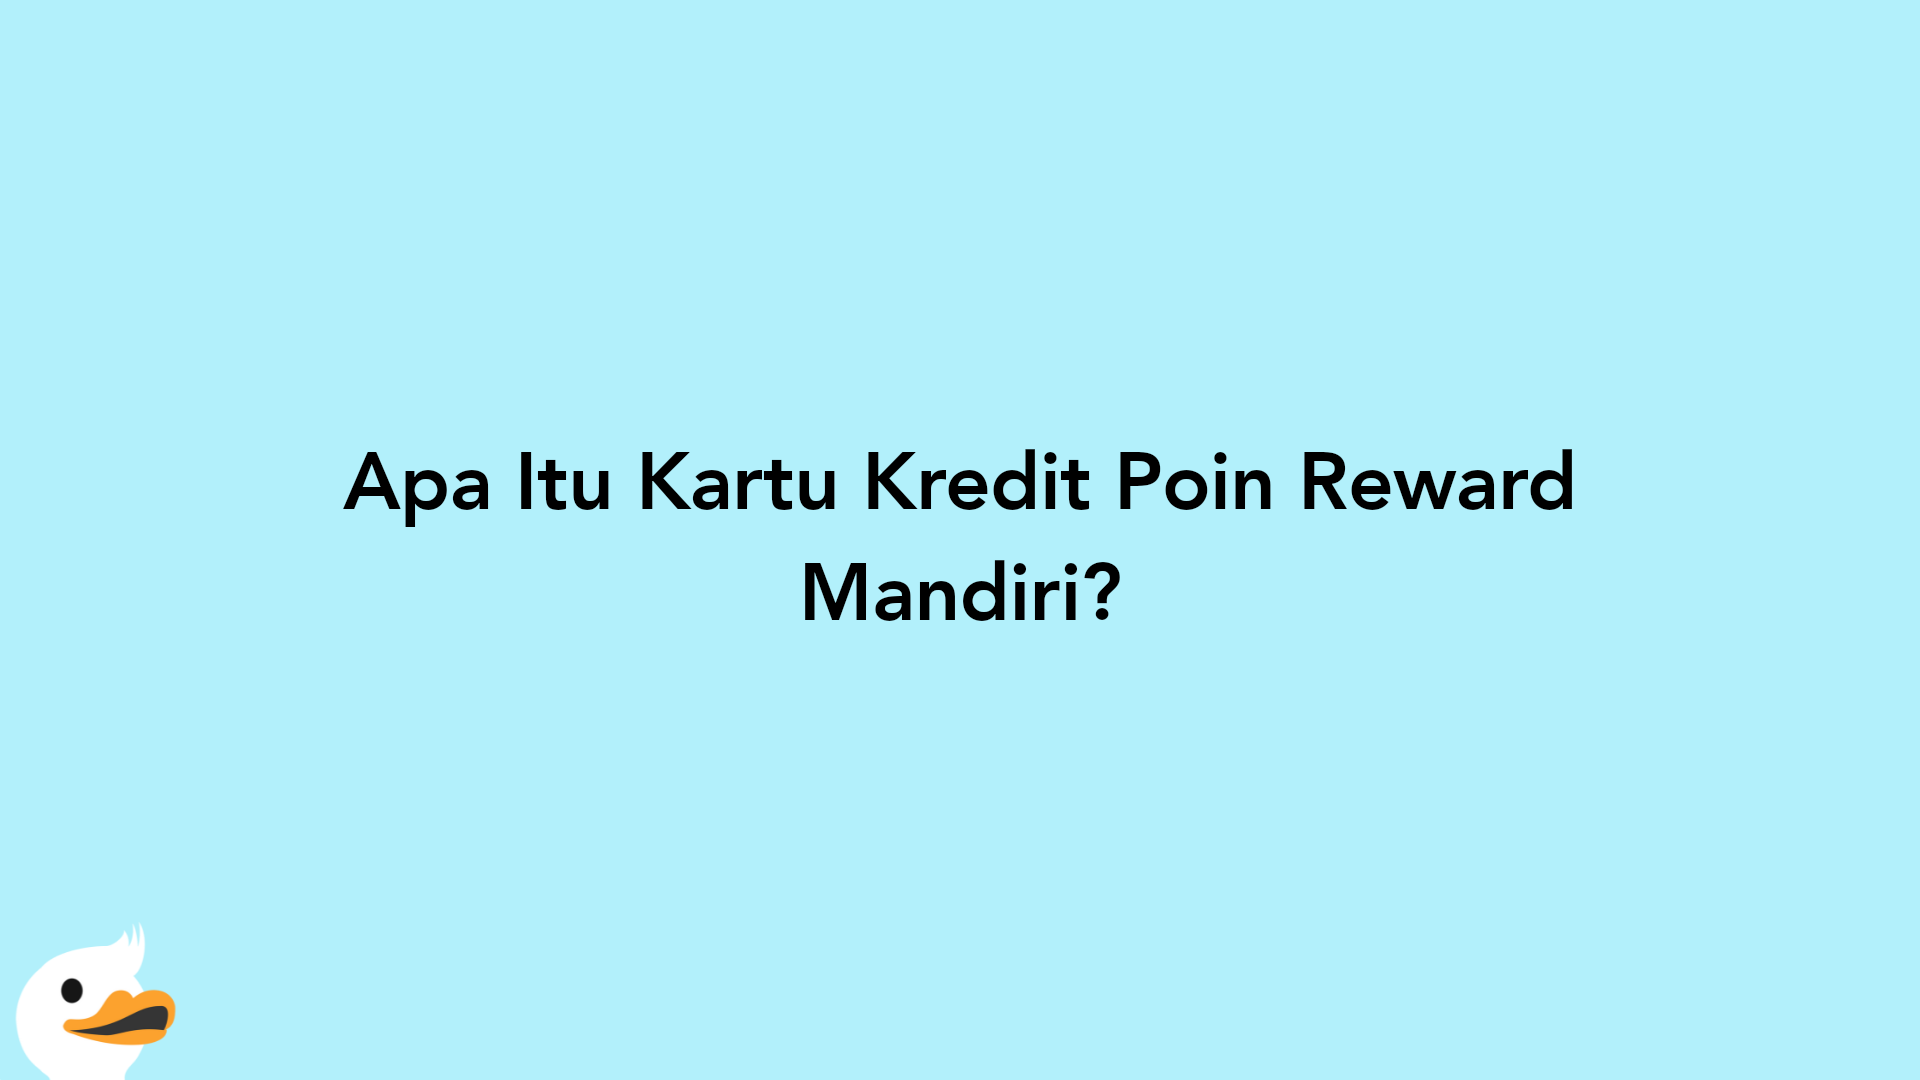 Apa Itu Kartu Kredit Poin Reward Mandiri?